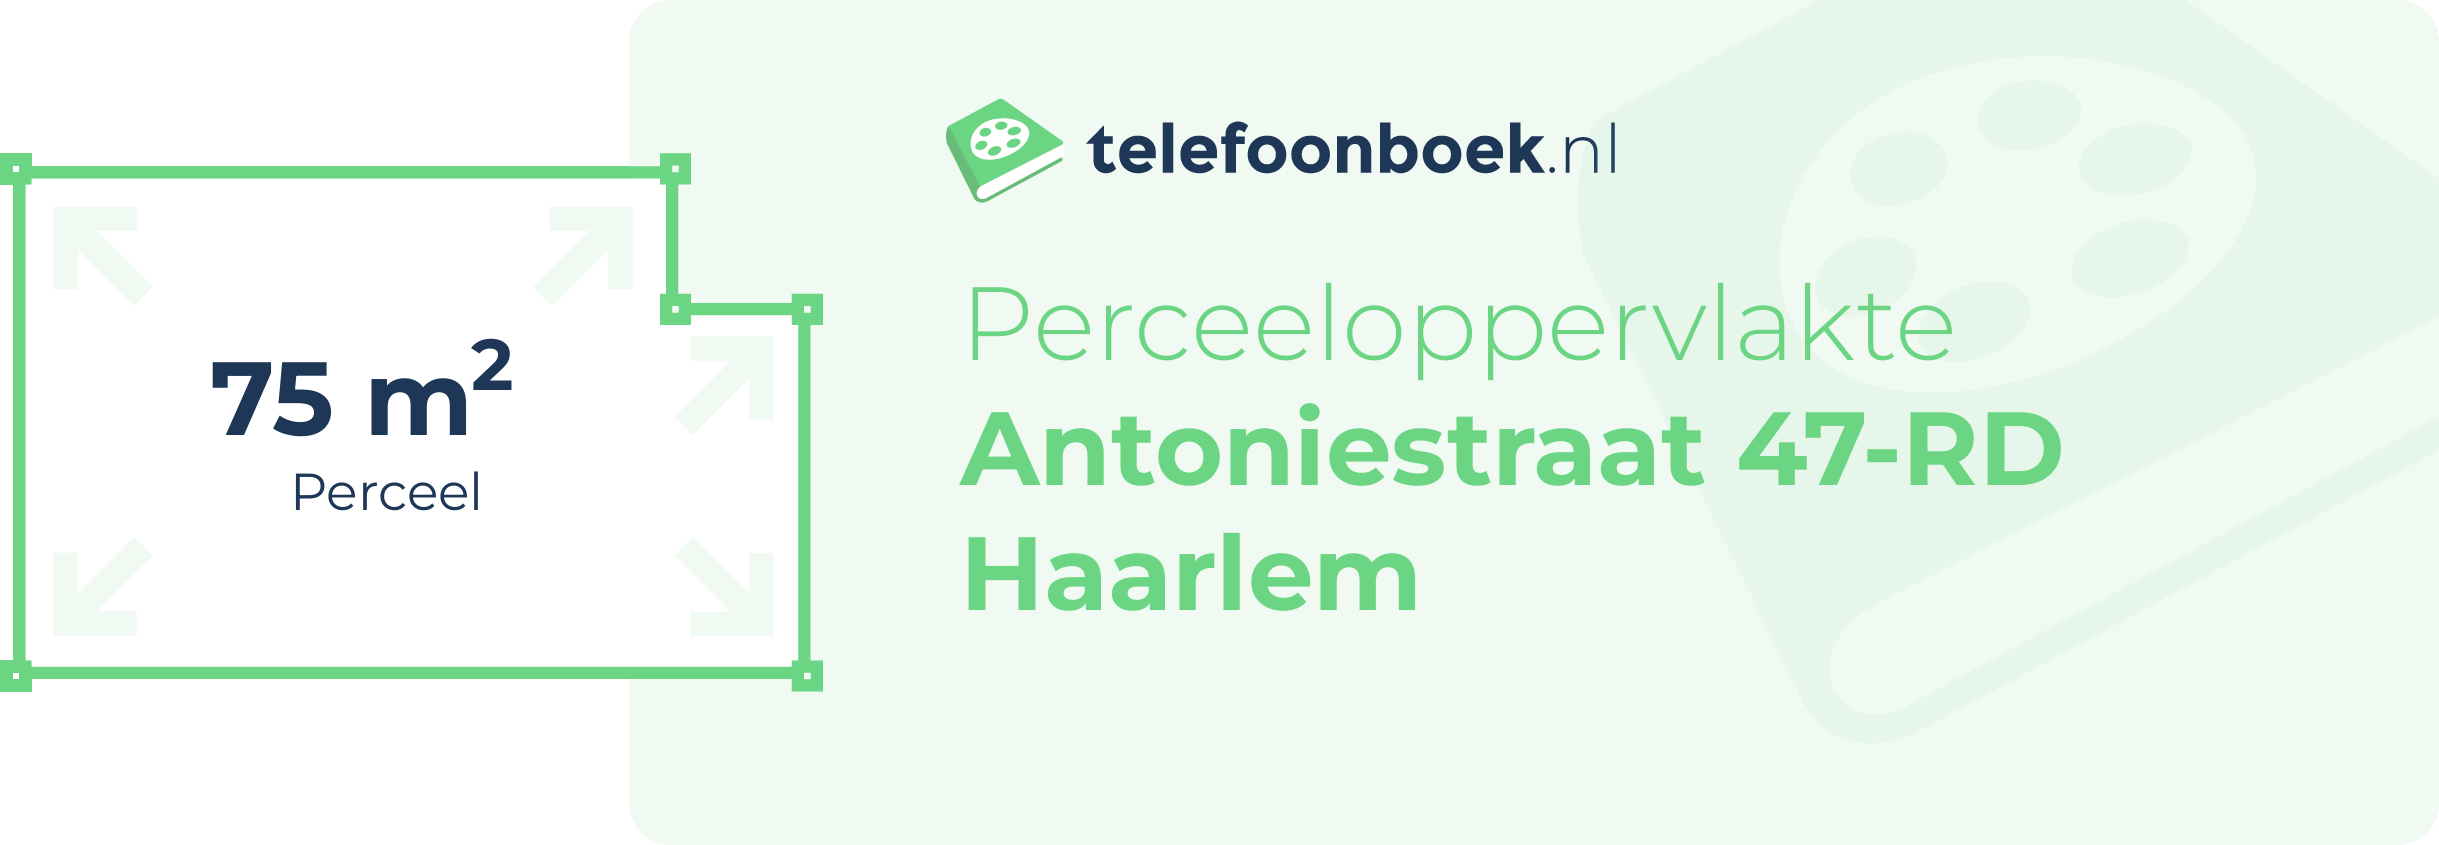 Perceeloppervlakte Antoniestraat 47-RD Haarlem